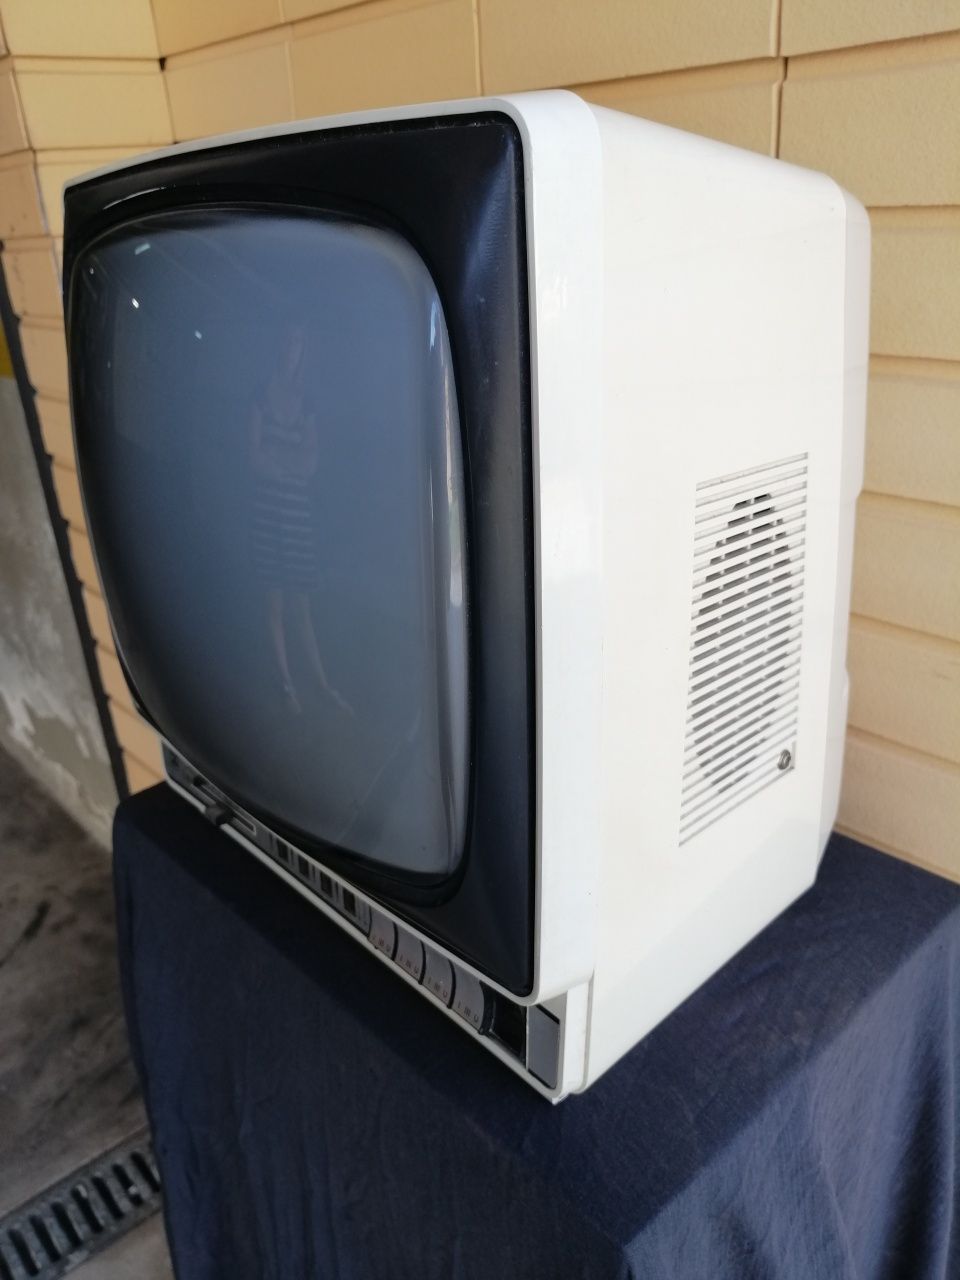 Televisor a preto e branco c/UHF /VHF dos anos 60